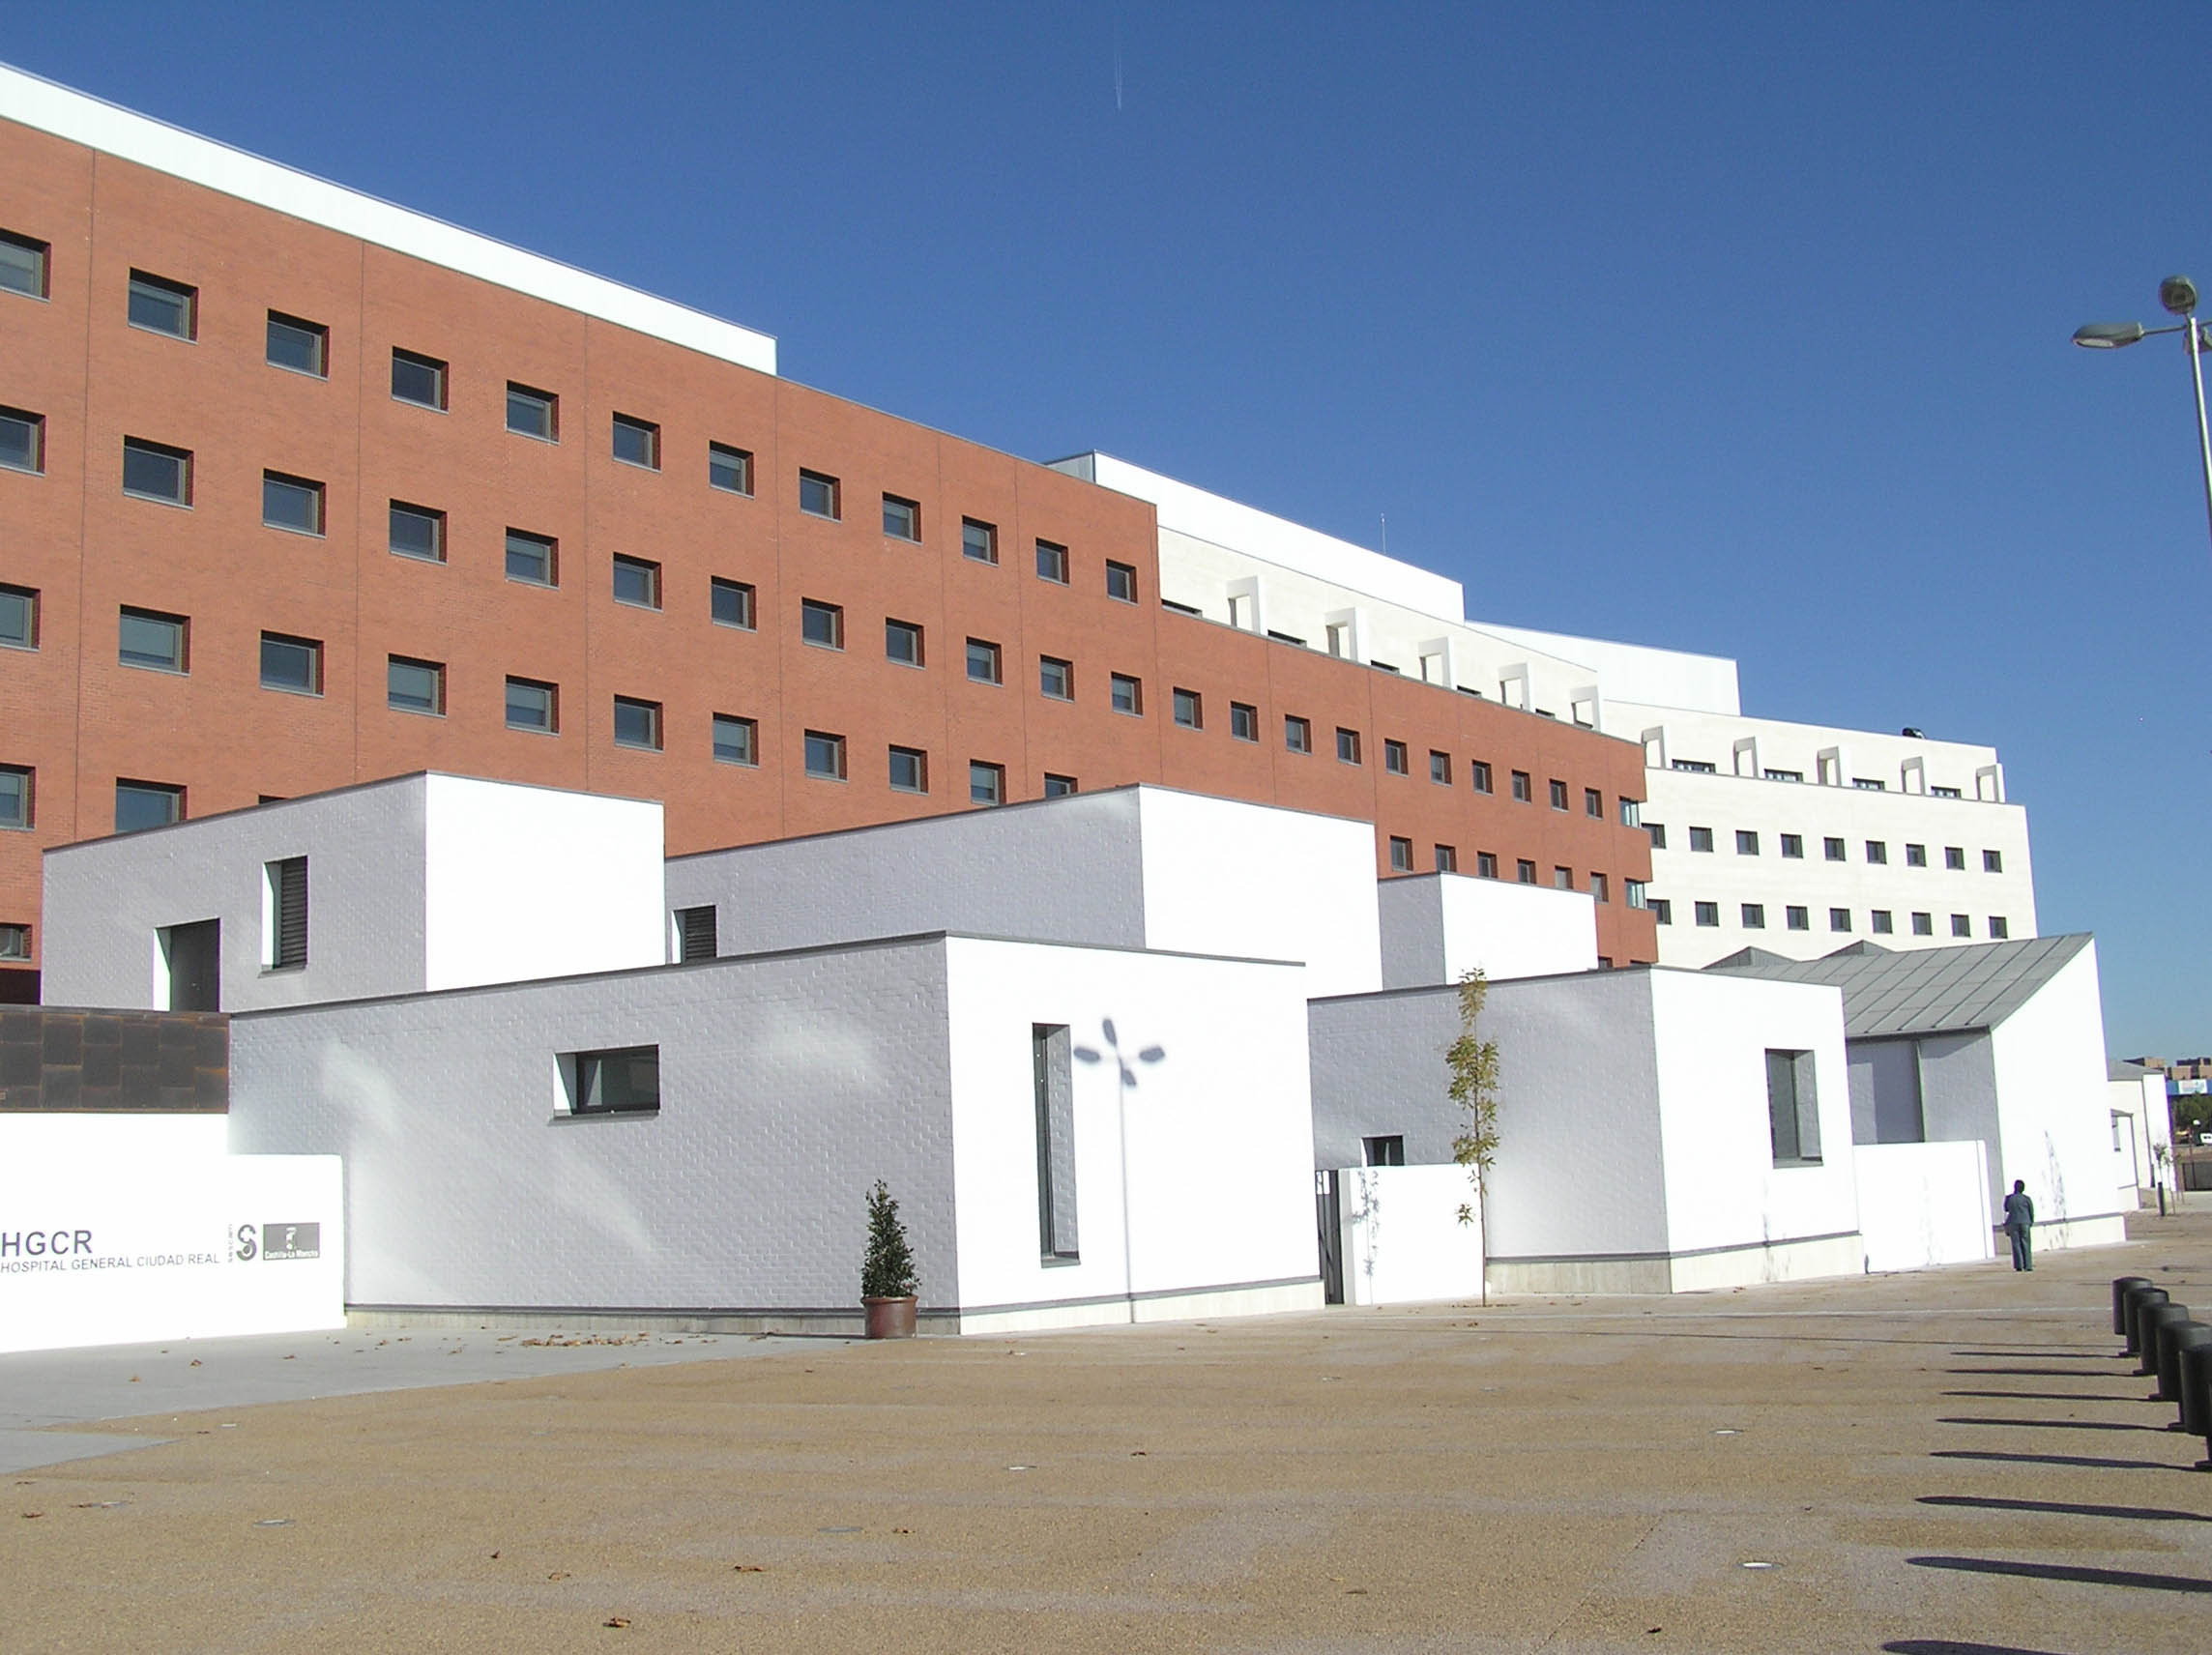 
			Hospital General de Ciudad Real
			
		